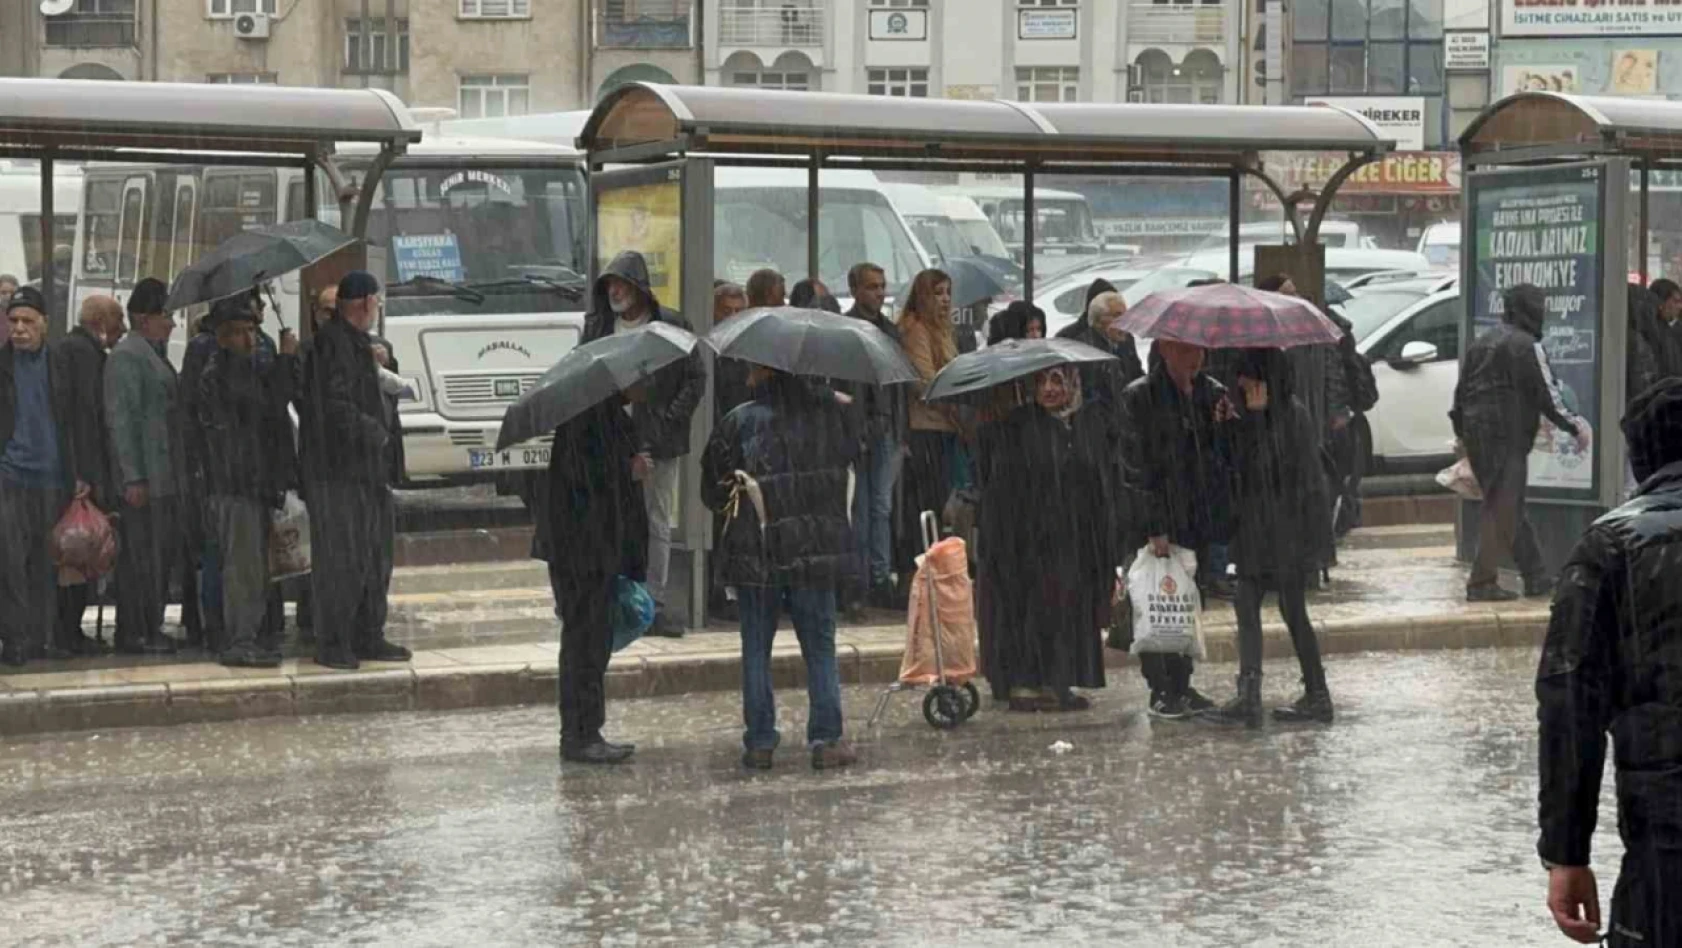 Elazığ'da sağanak yağış etkili oldu